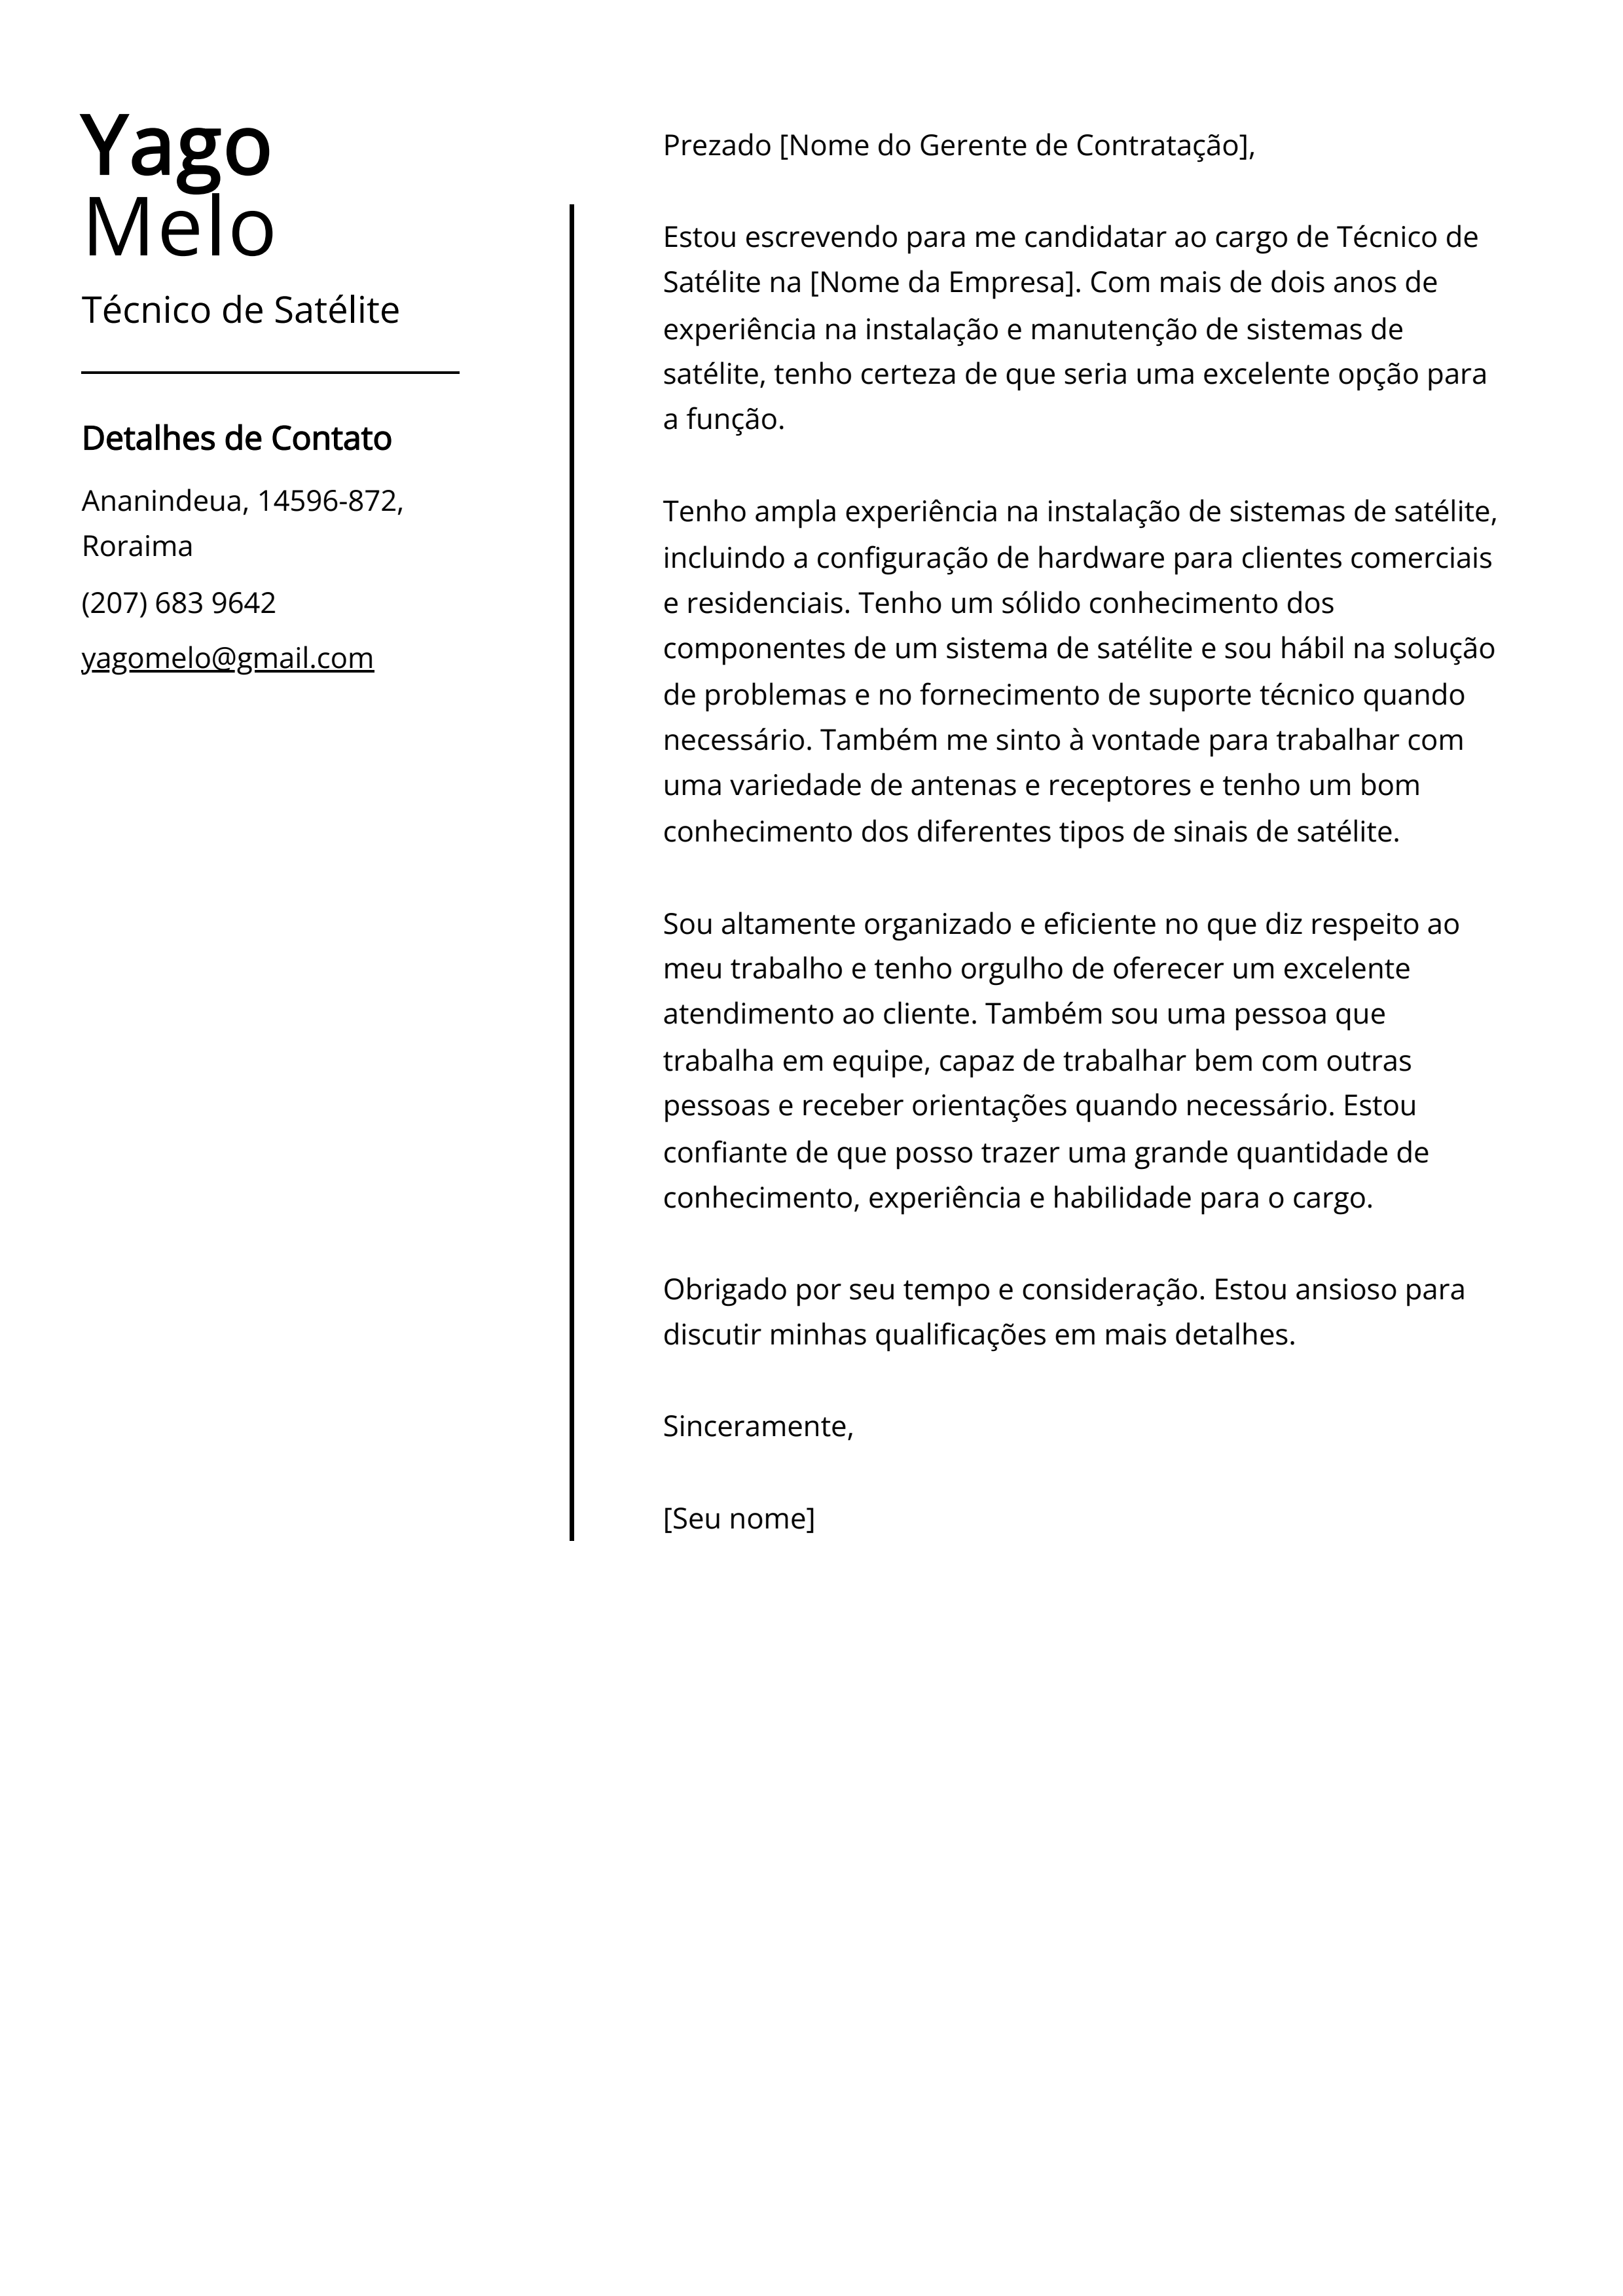 Exemplo de Carta de Apresentação de Técnico de Satélite